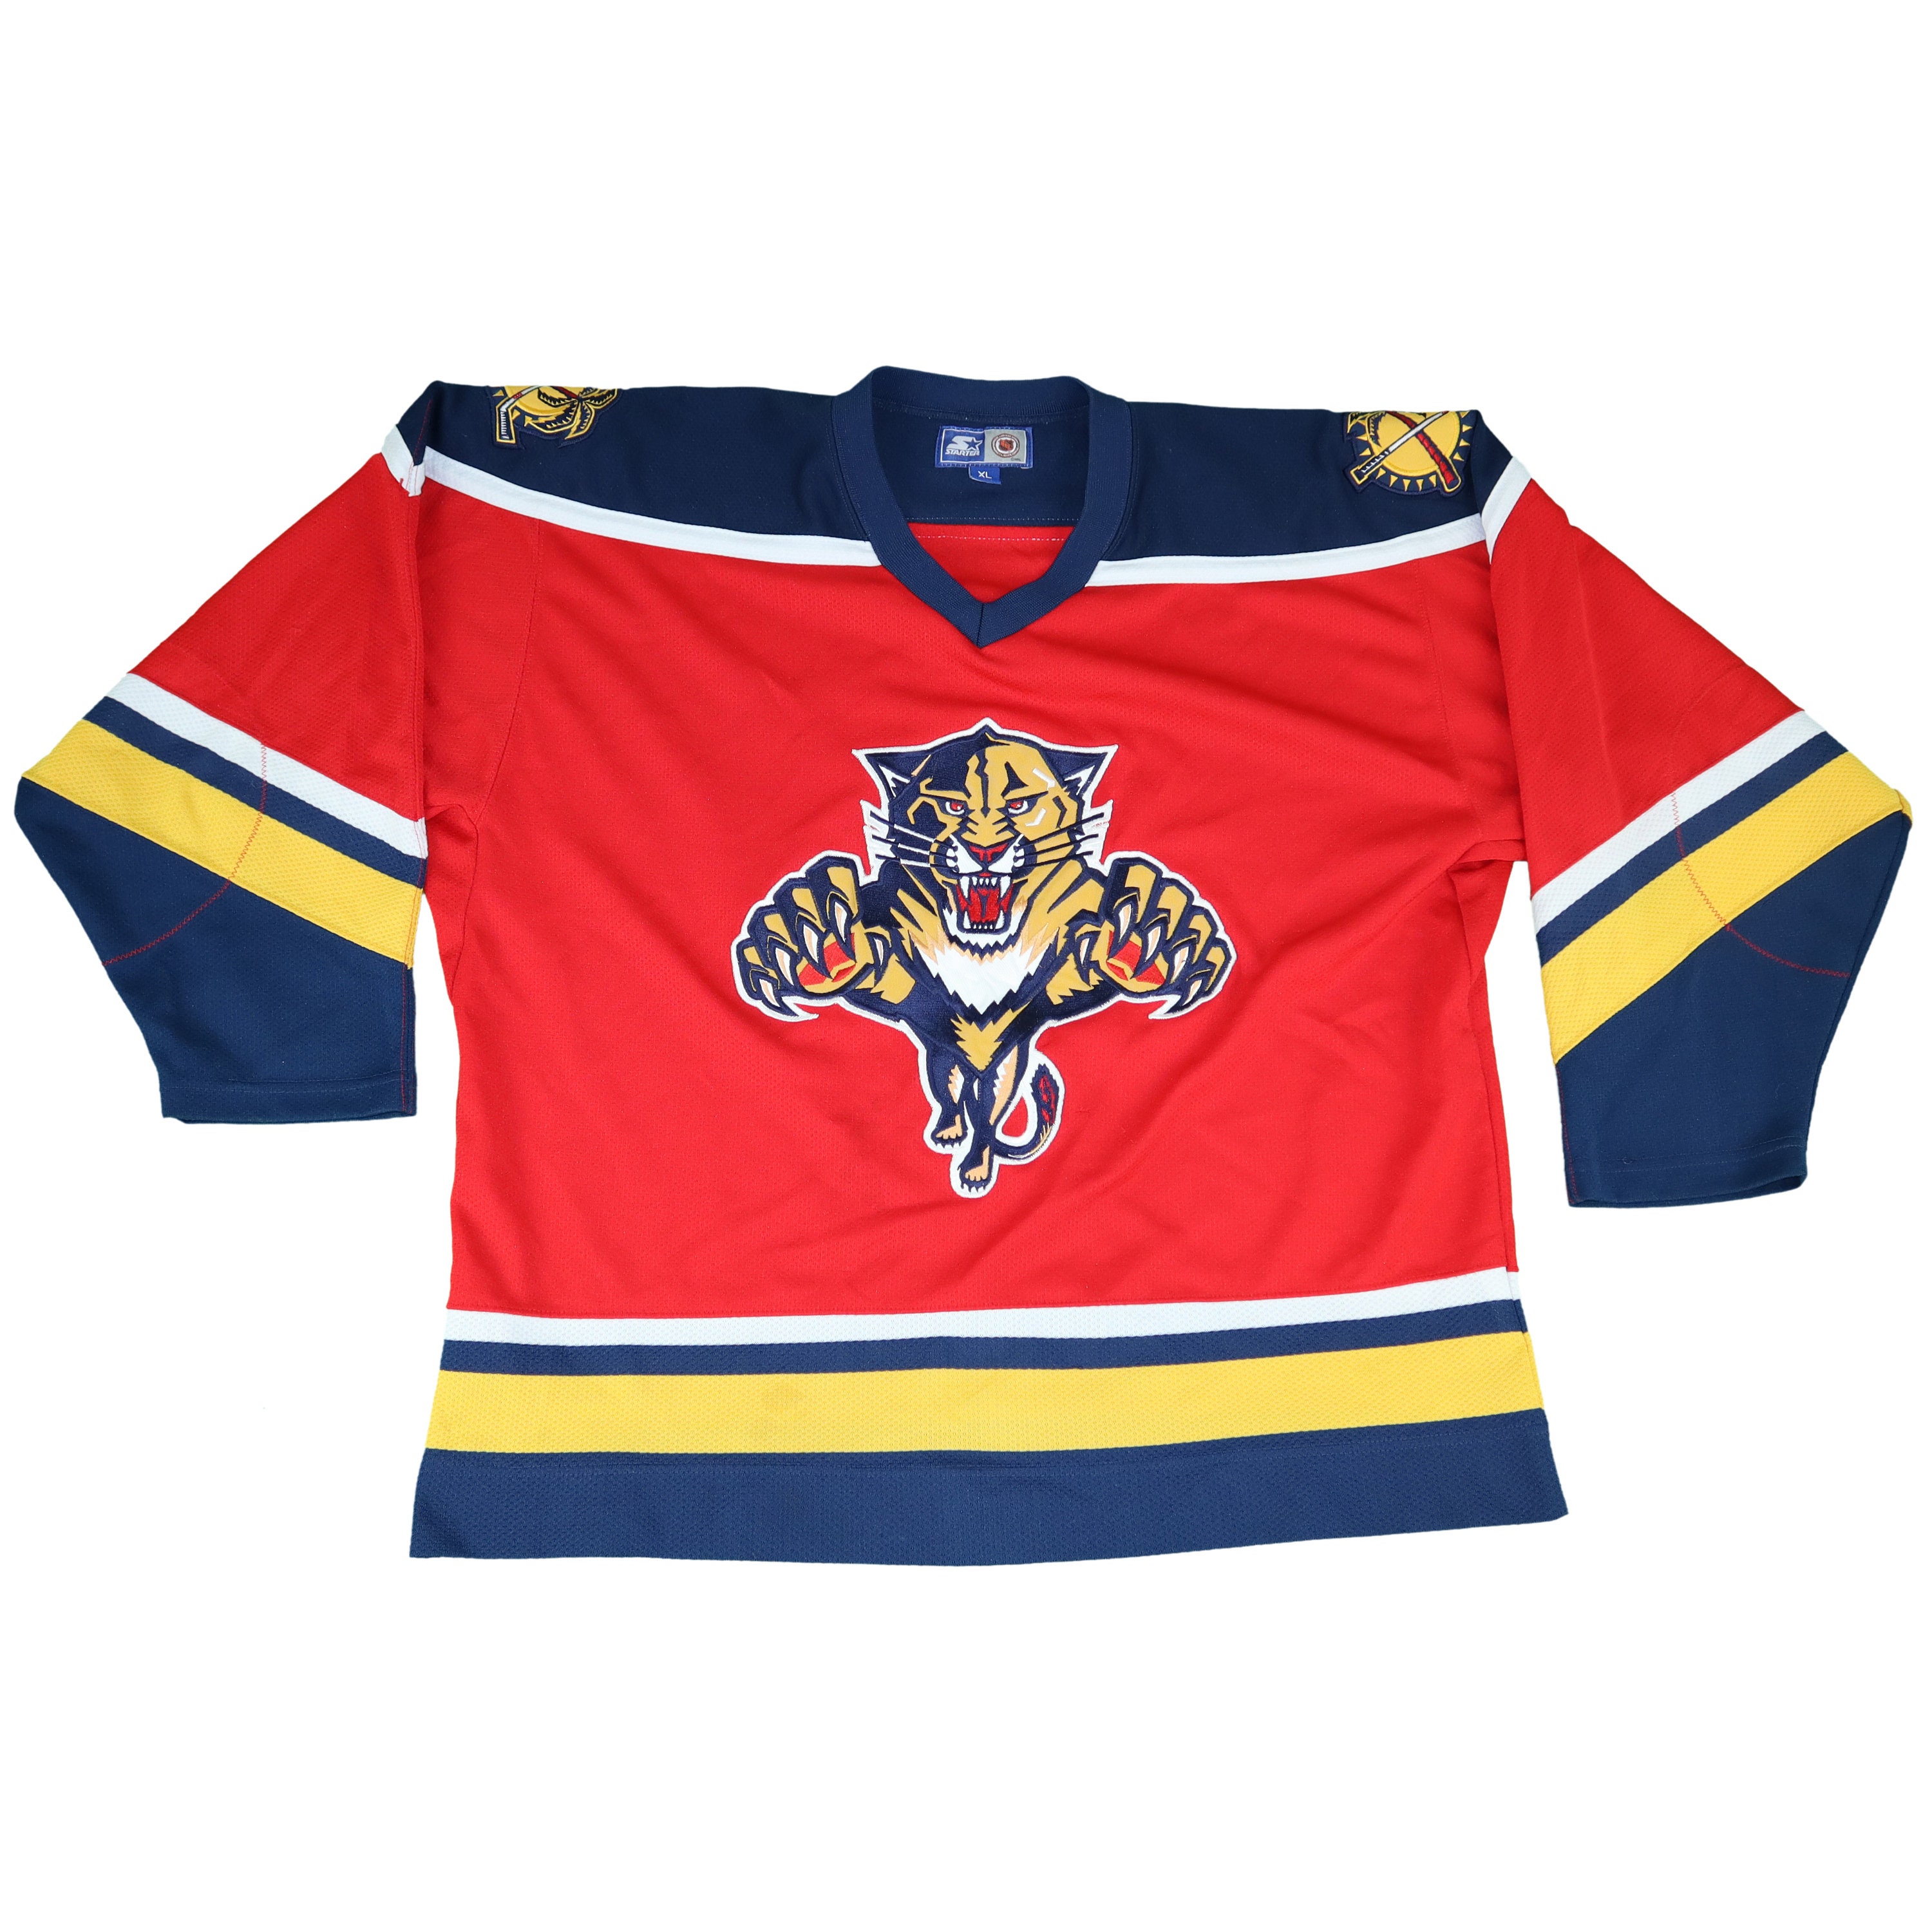 Vintage Florida Panthers Starter Hockey Jersey Size 2XL 90s NHL